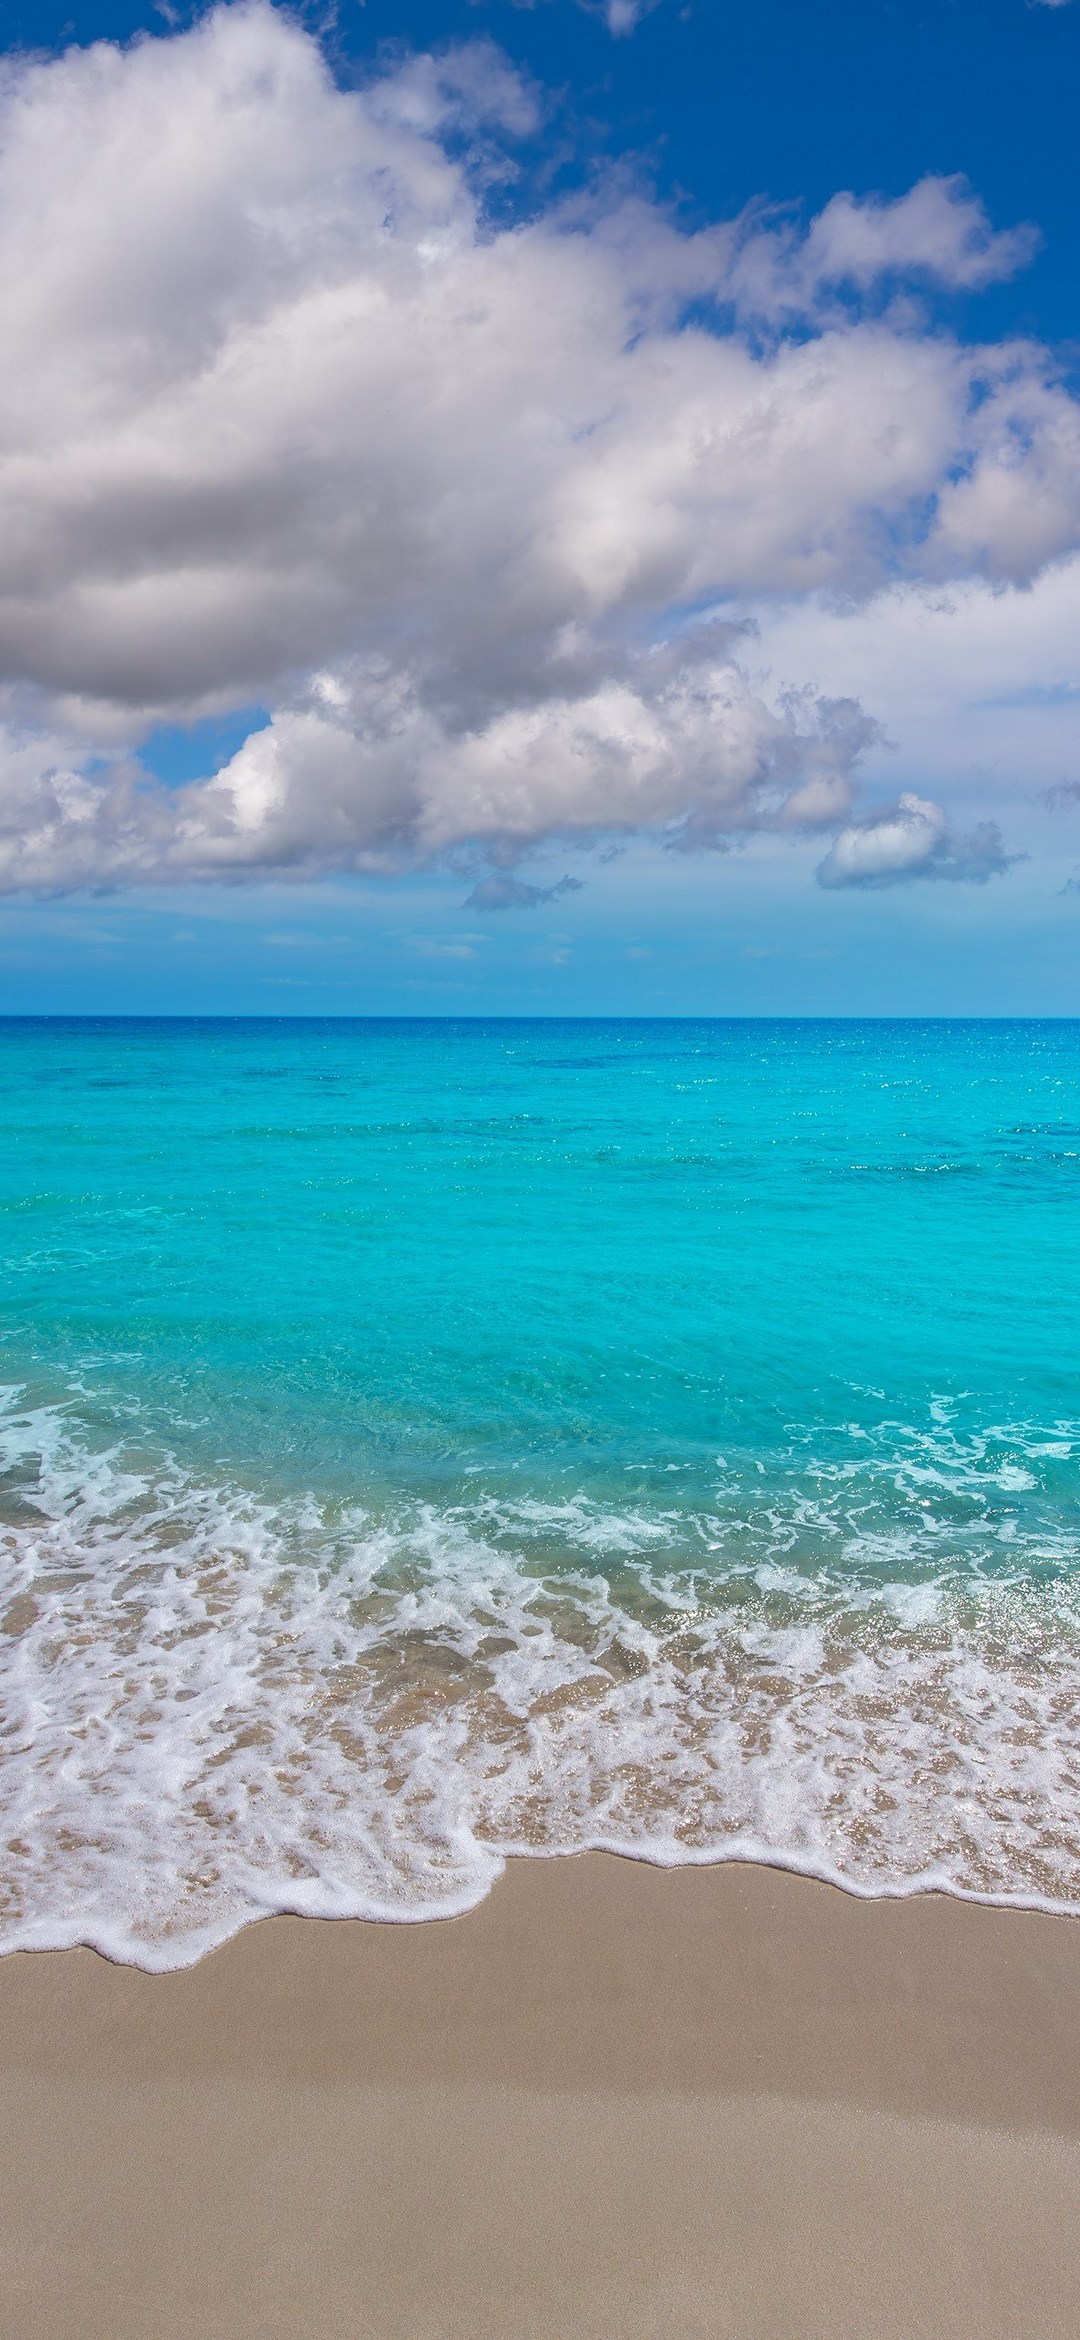 アクアブルーの海と砂浜と白い雲 Black Shark2 Android スマホ壁紙 待ち受け スマラン